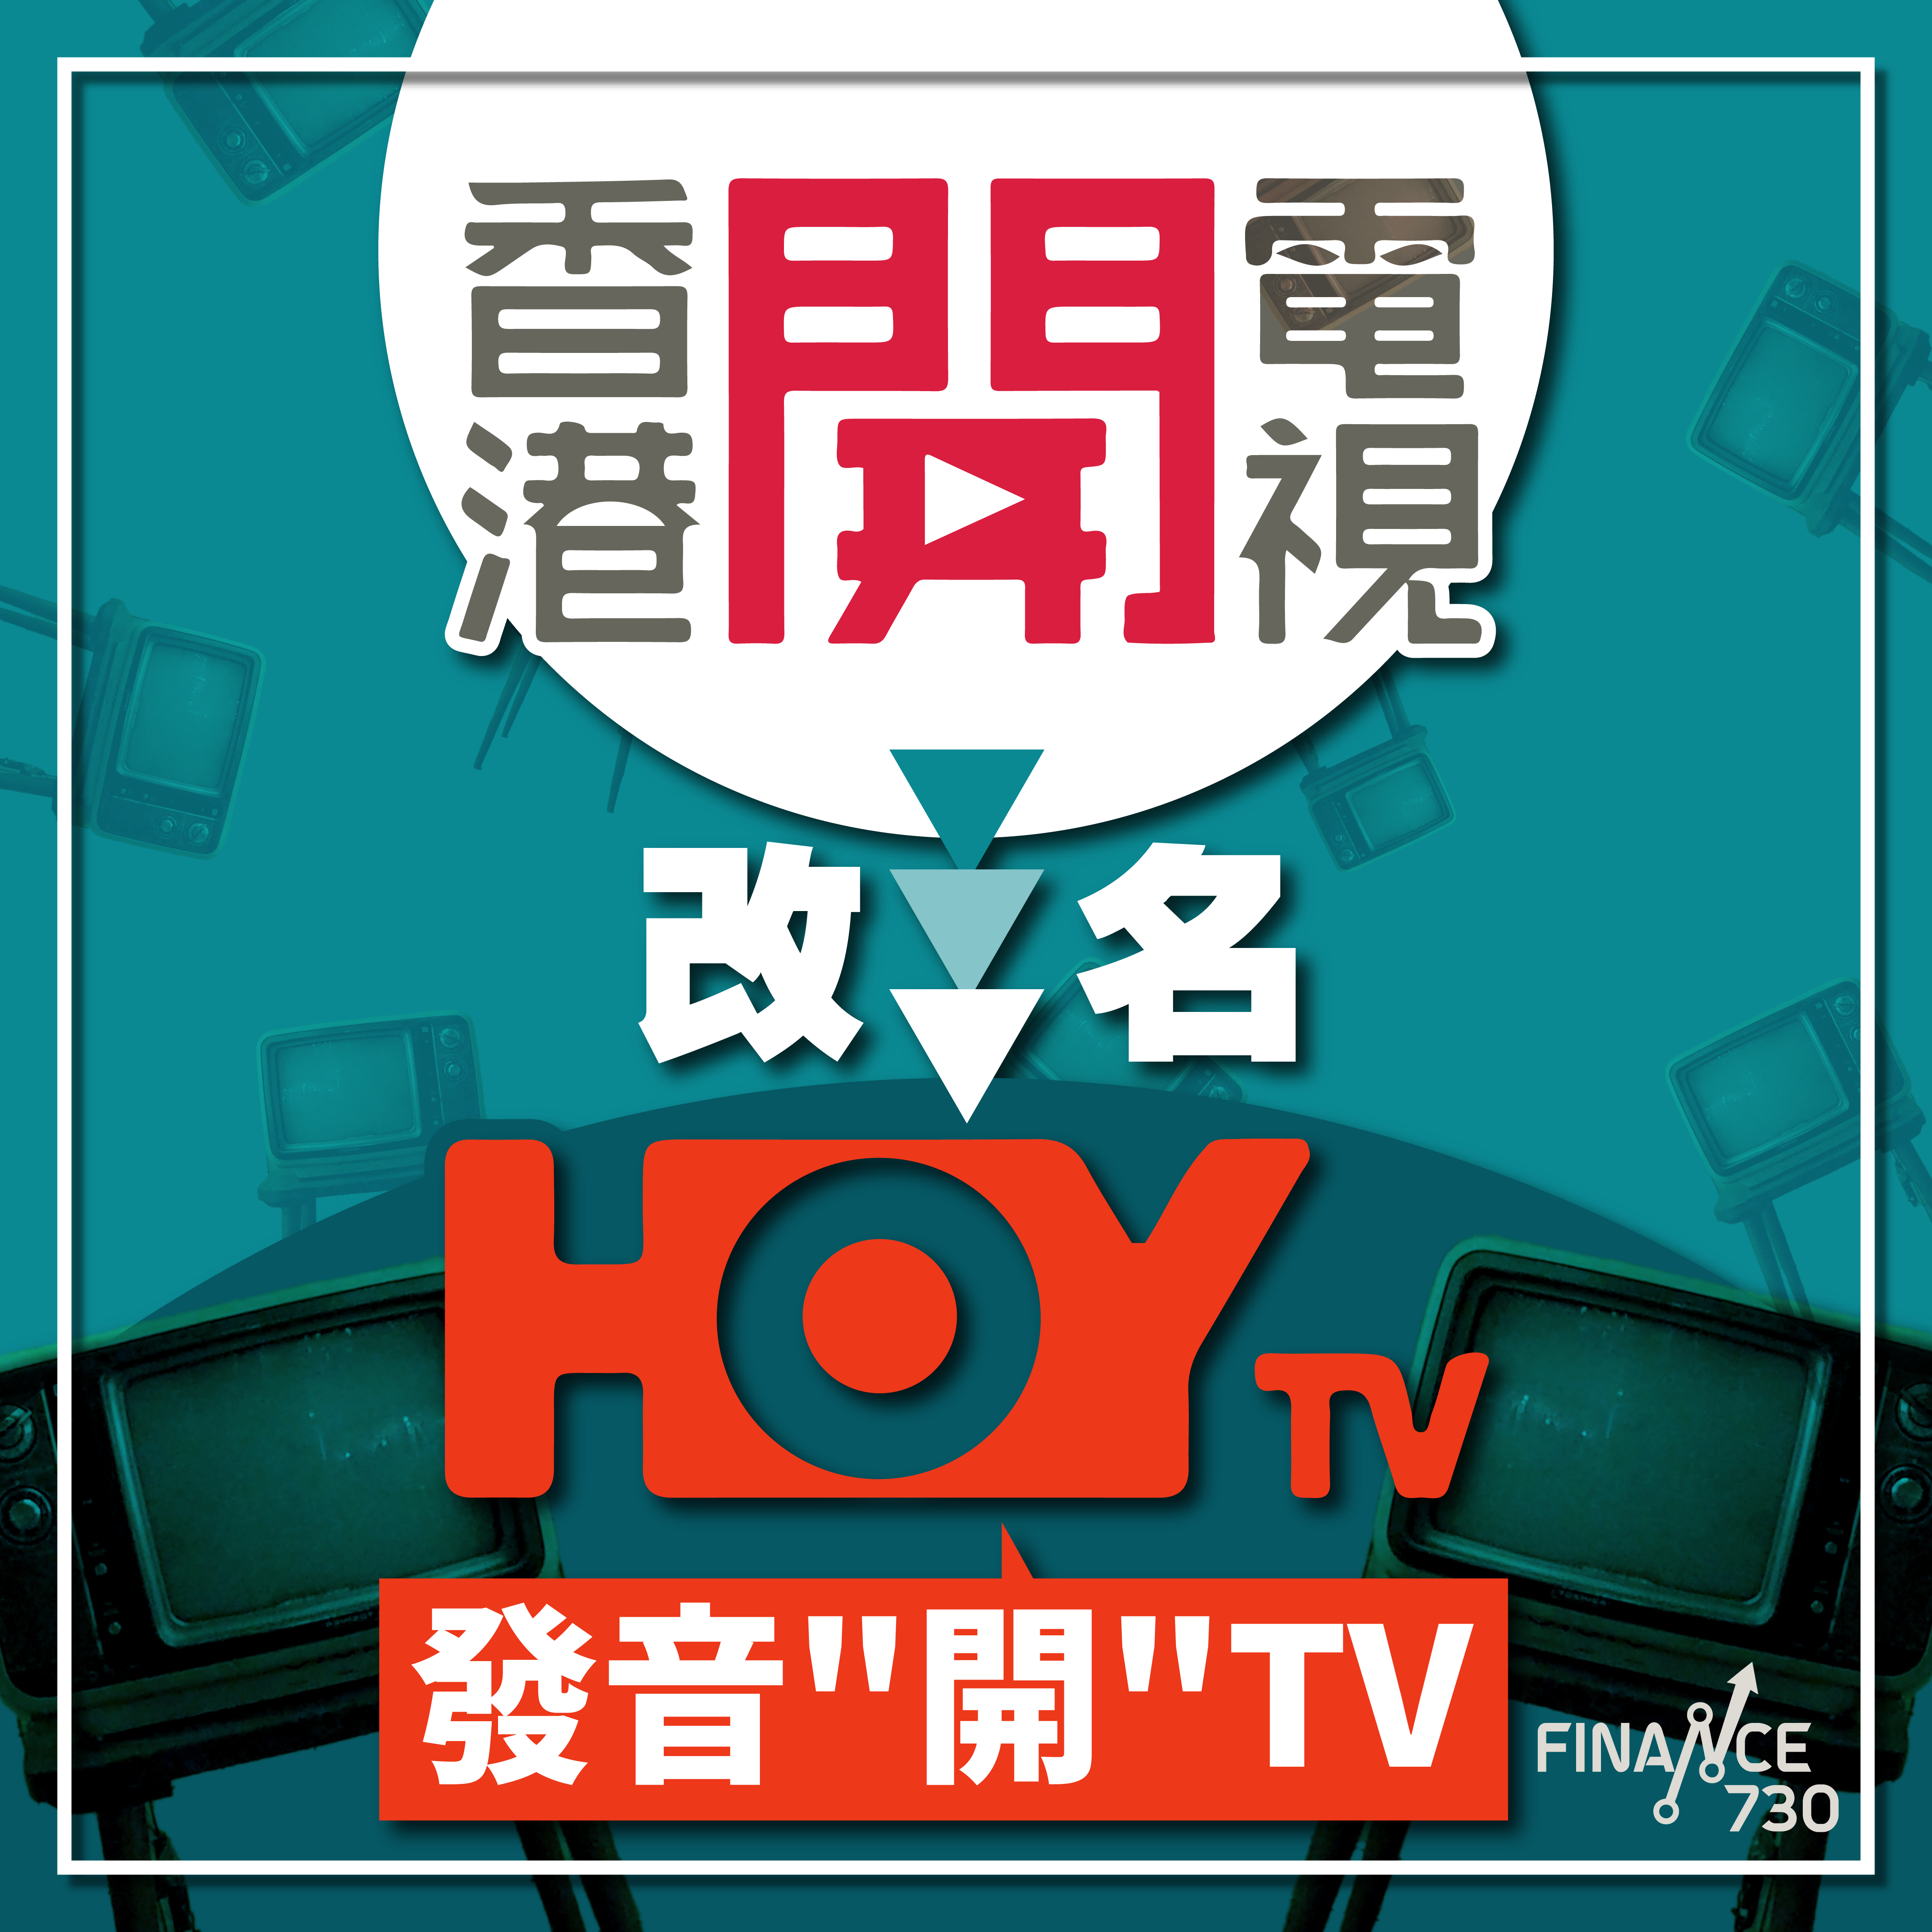 香港開電視改名-77台-HOYTV-HOY-TV-欣榮商場